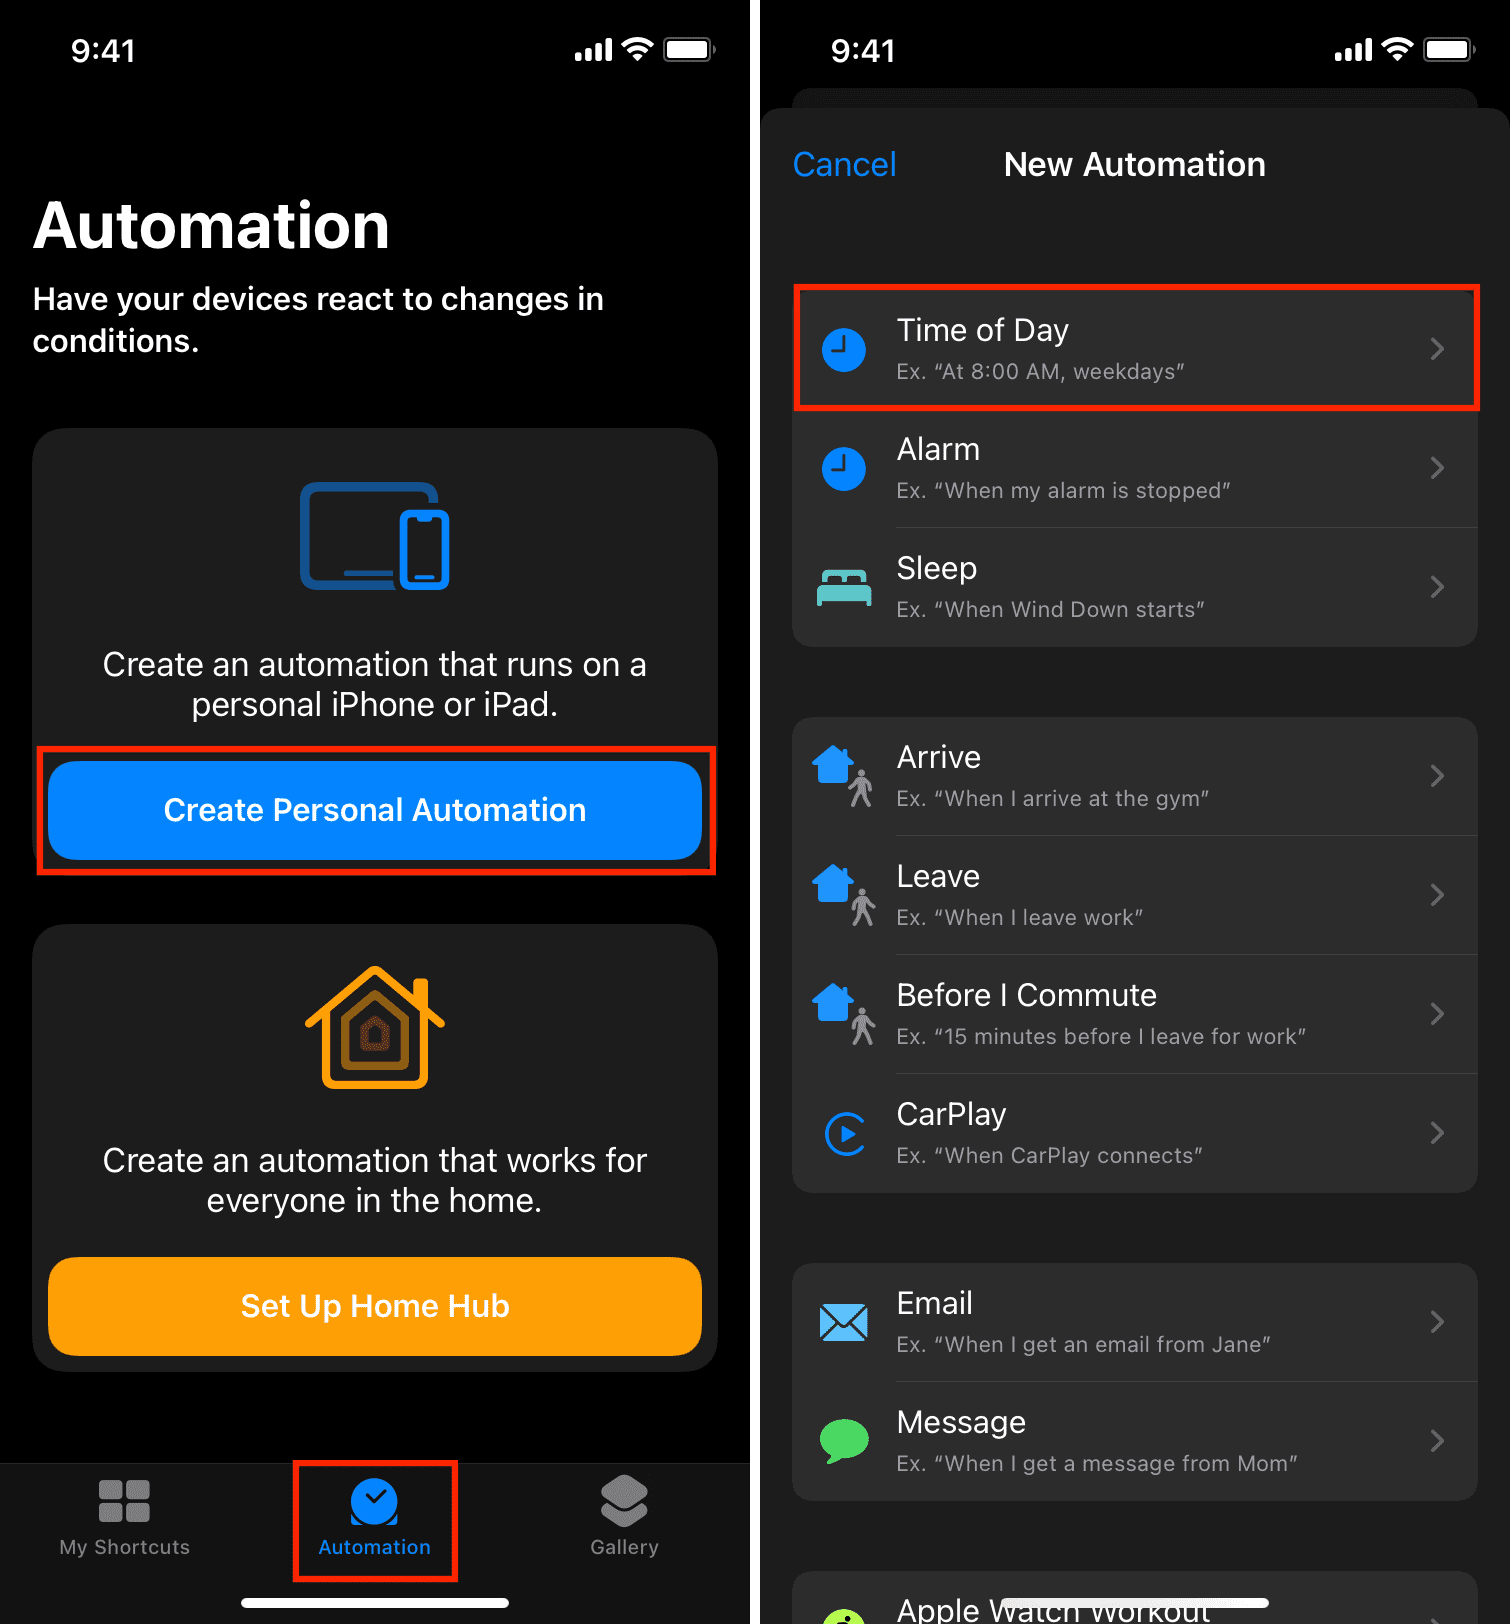 Créer une automatisation à exécuter à l'heure du jour et changer automatiquement le fond d'écran de l'iPhone